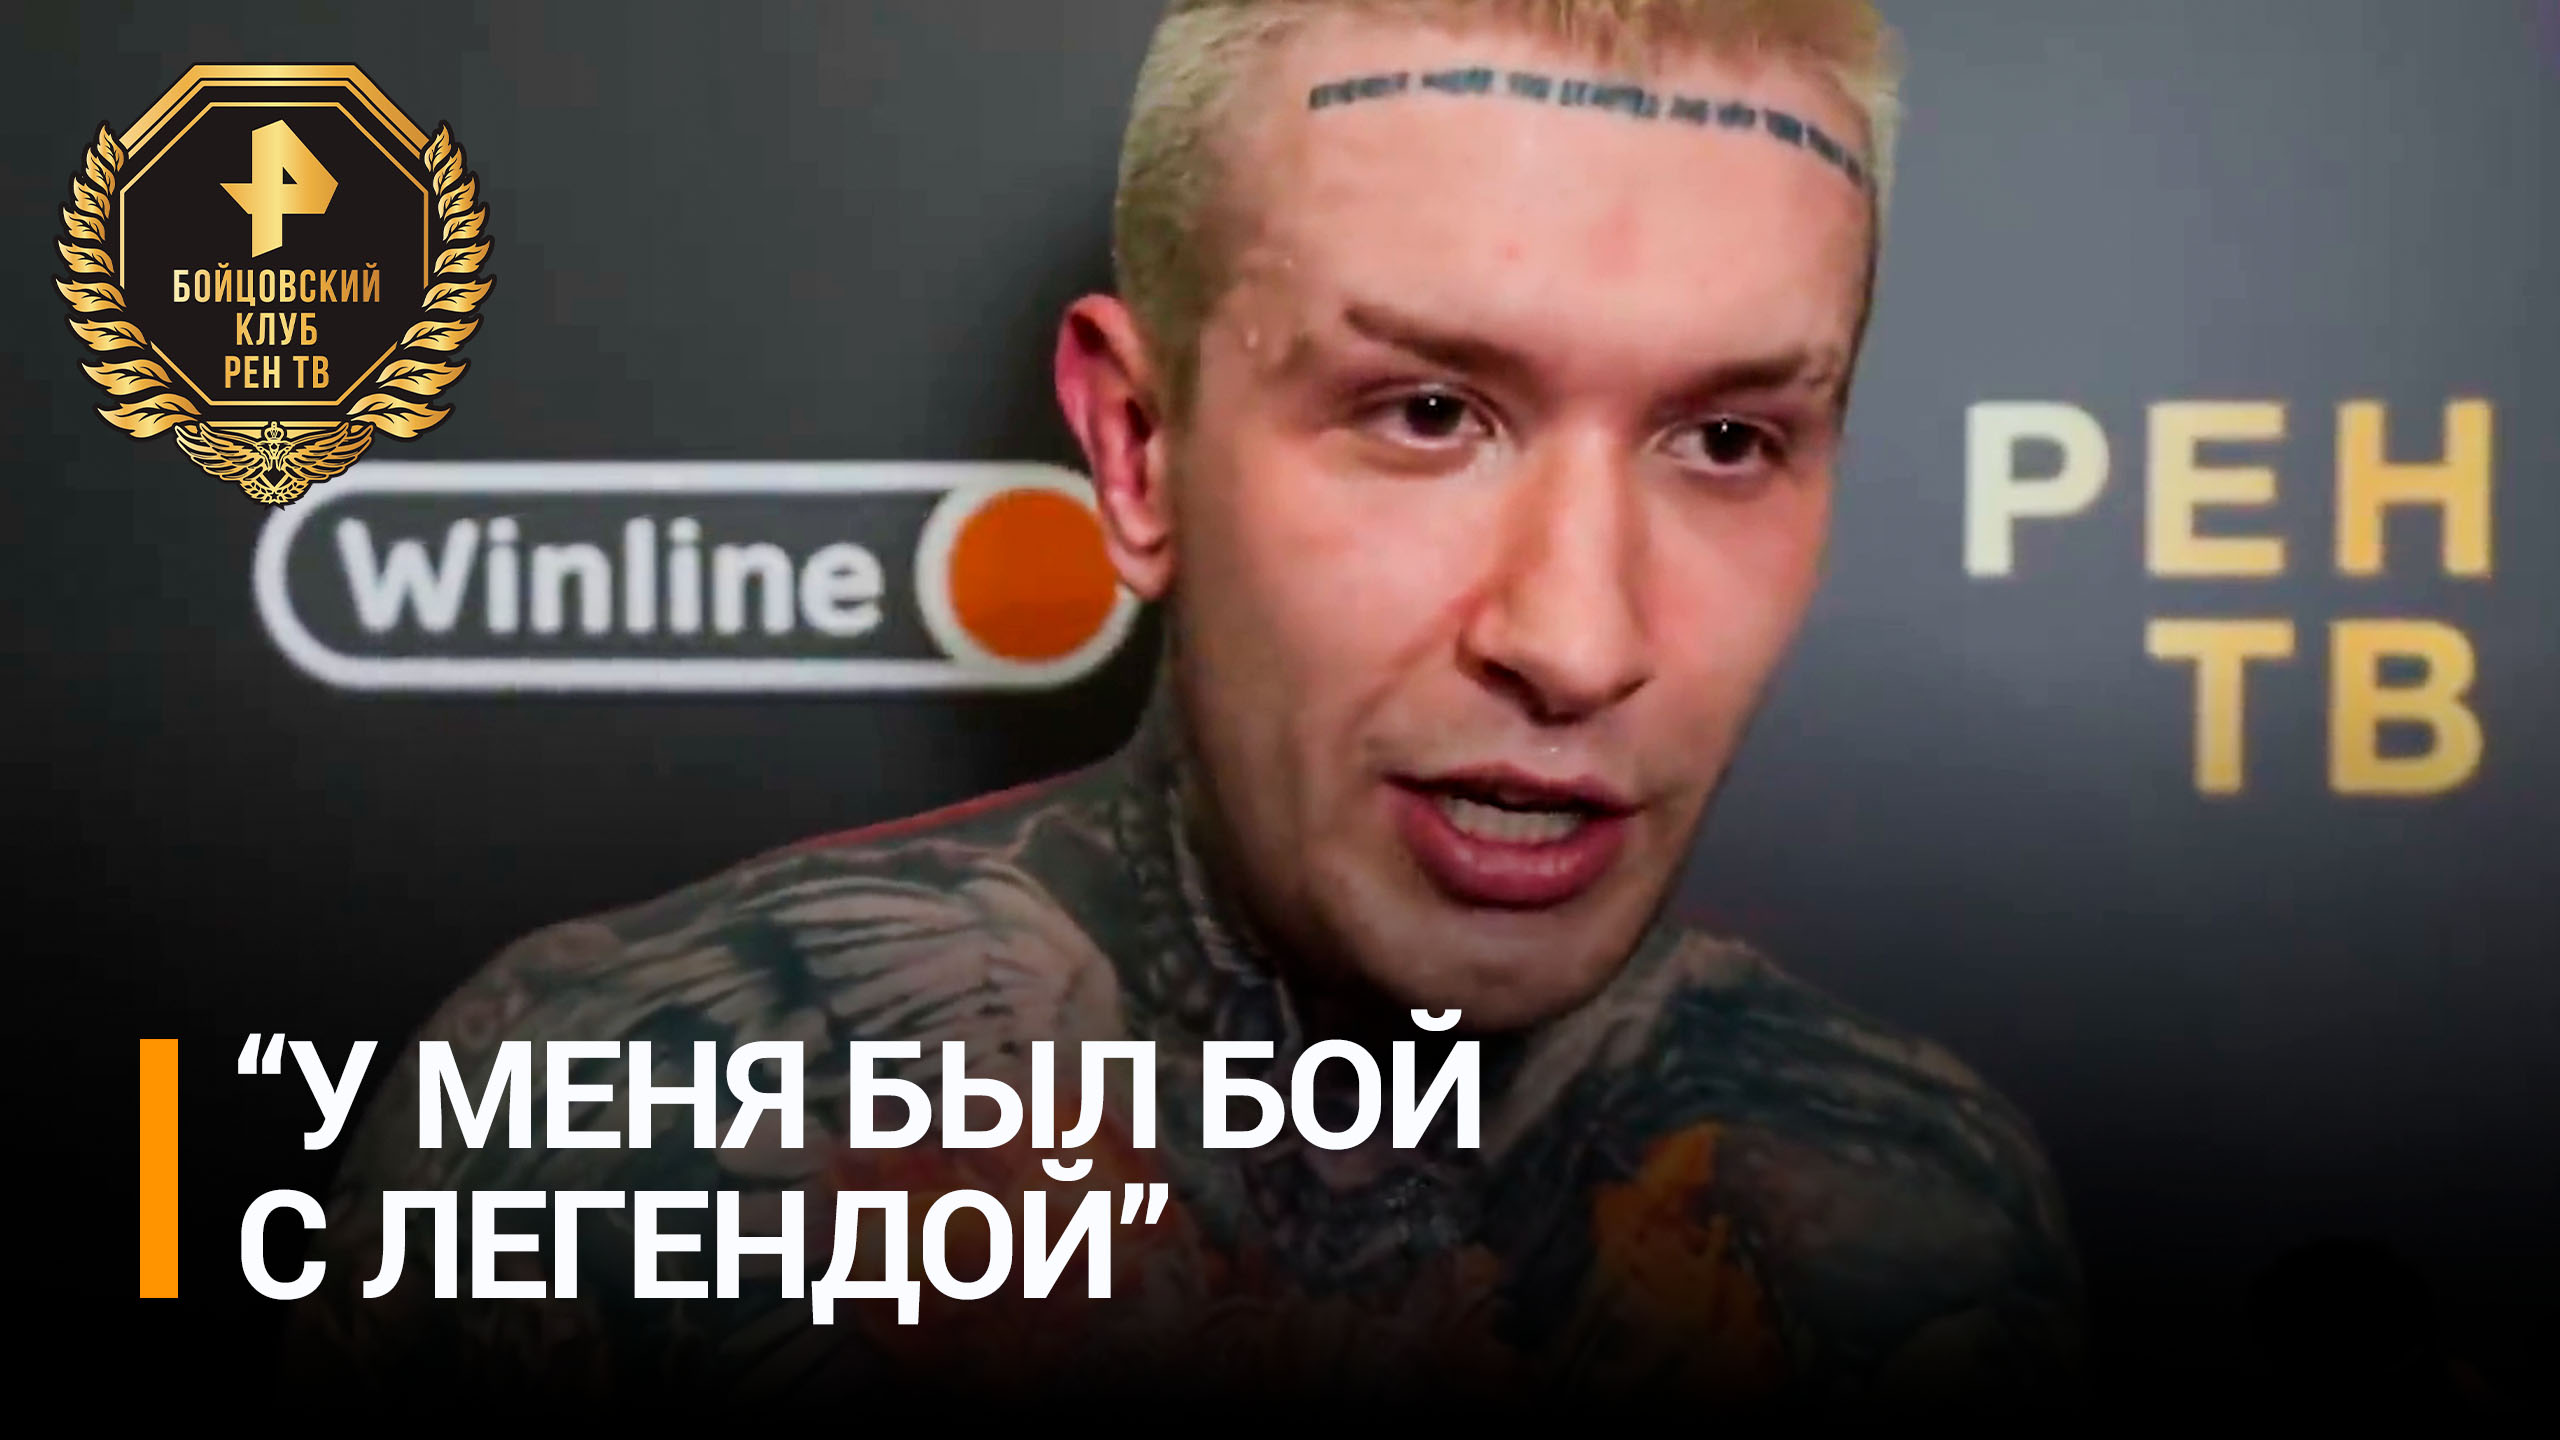 Ершов отметил, что Емельяненко в ринге всегда опасен / Бойцовский клуб РЕН ТВ